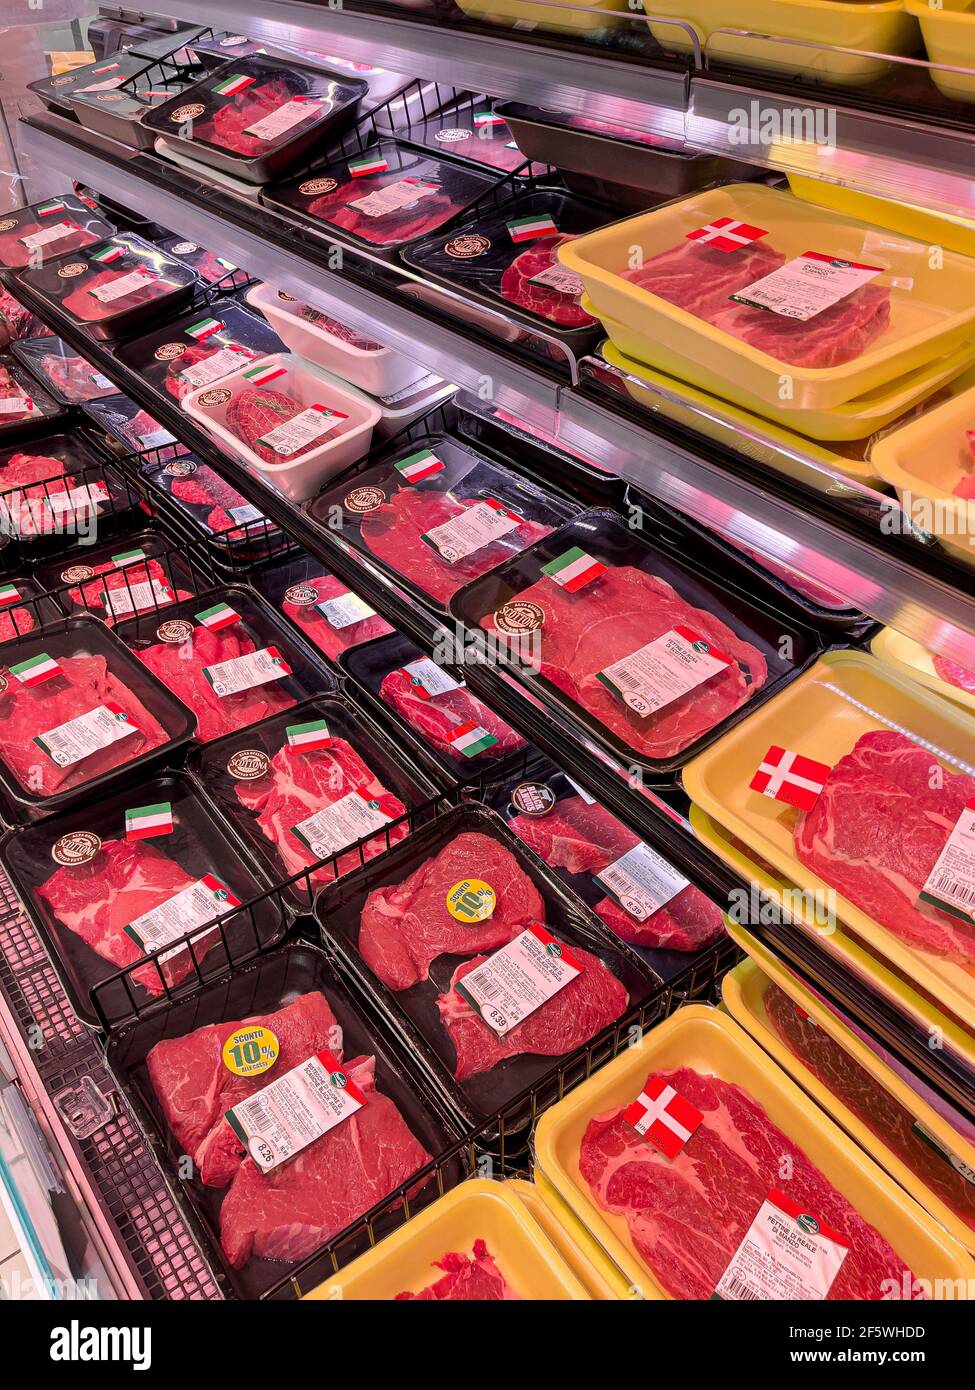 Bracciano, Roma, Italia - 26 marzo 2021: Bancone di carne presso uno dei  supermercati della catena Gros Foto stock - Alamy